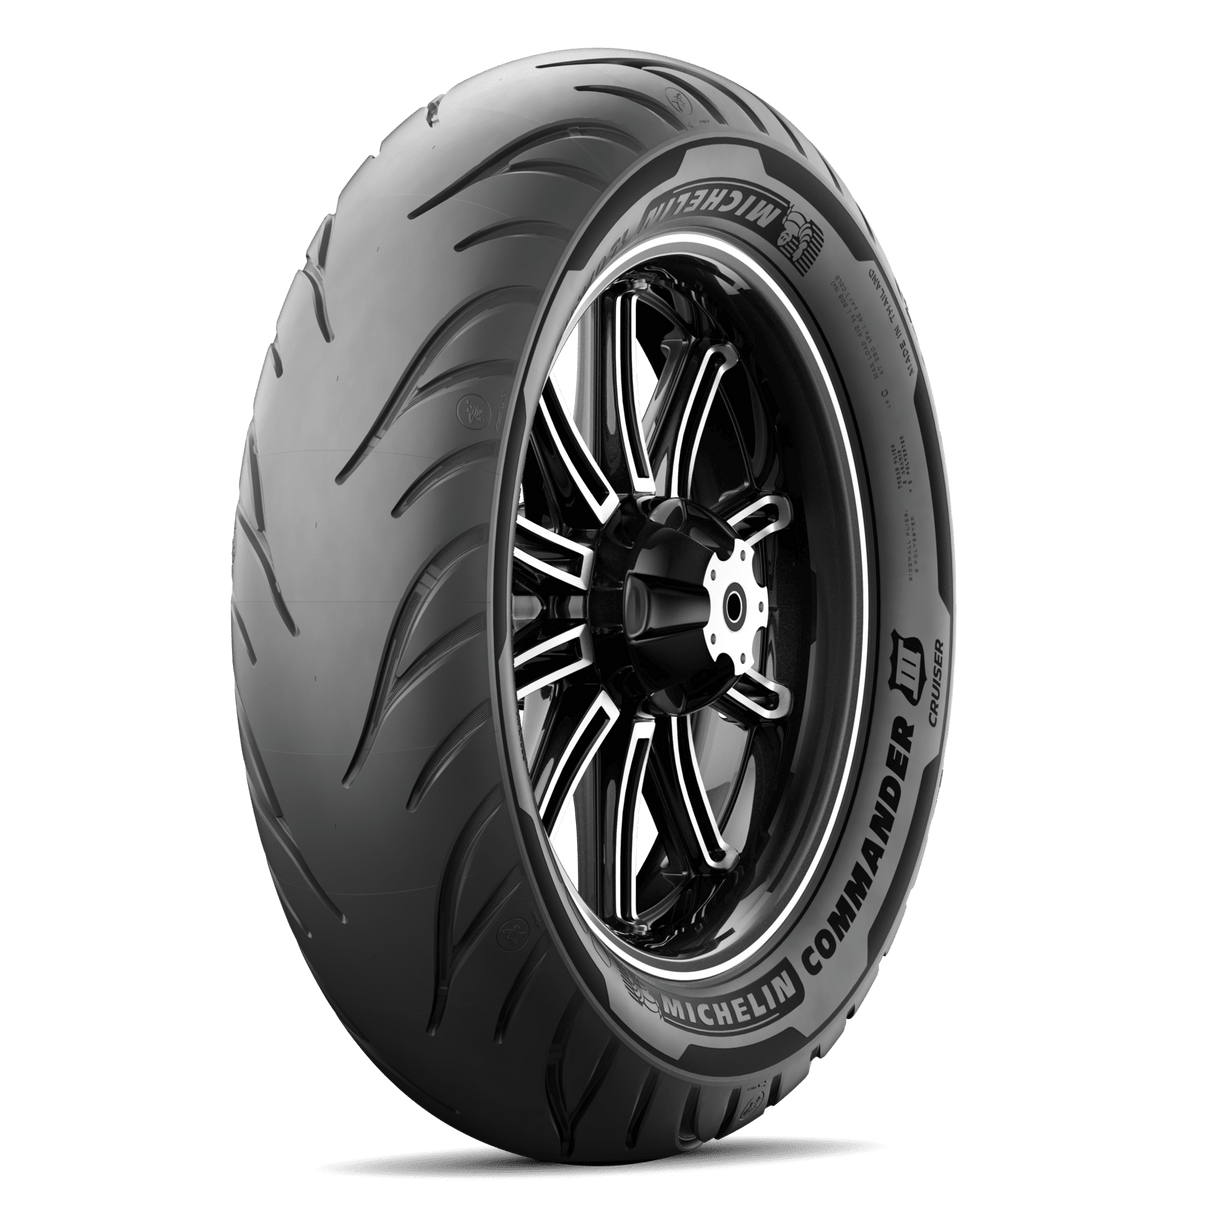 Michelin Commander III 160/70B-17 73V Rear Tyre